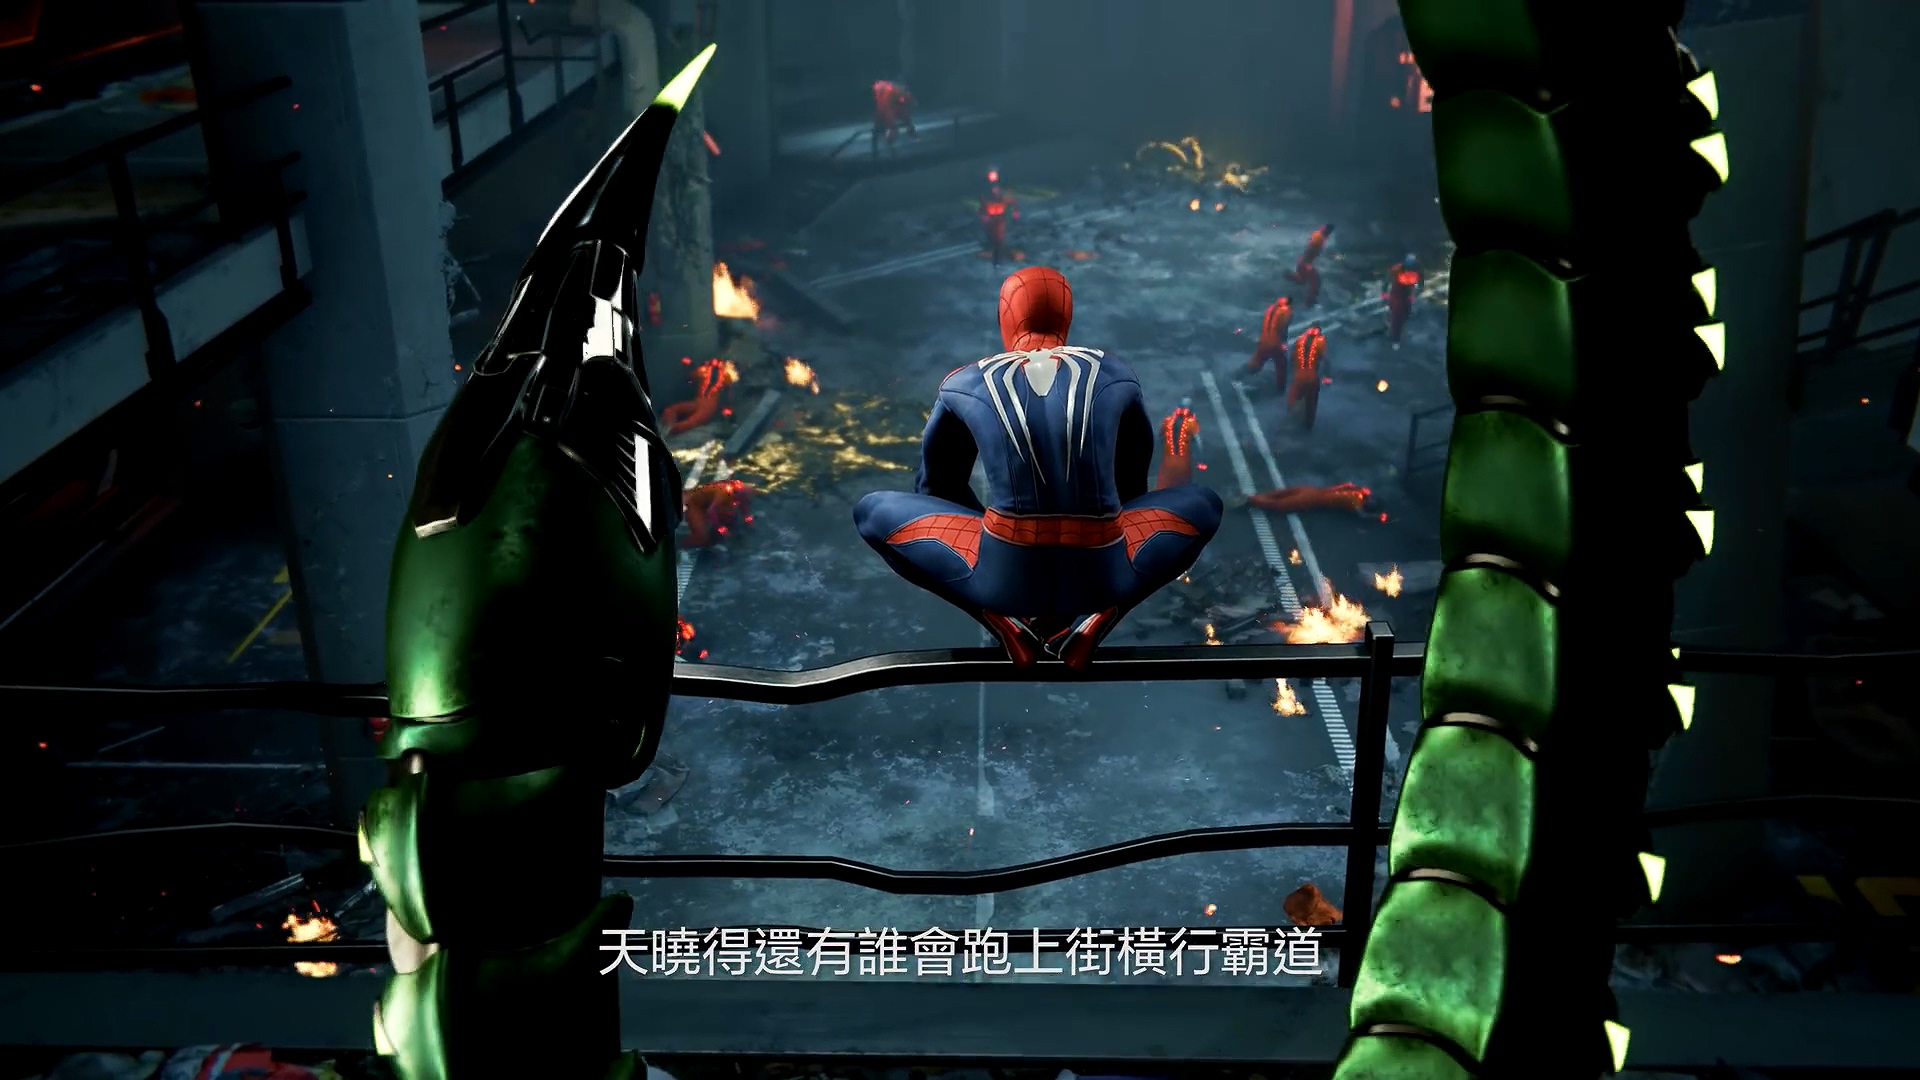 PS4《蜘蛛人》中文預告 電台主持人大罵蜘蛛人變裝怪胎